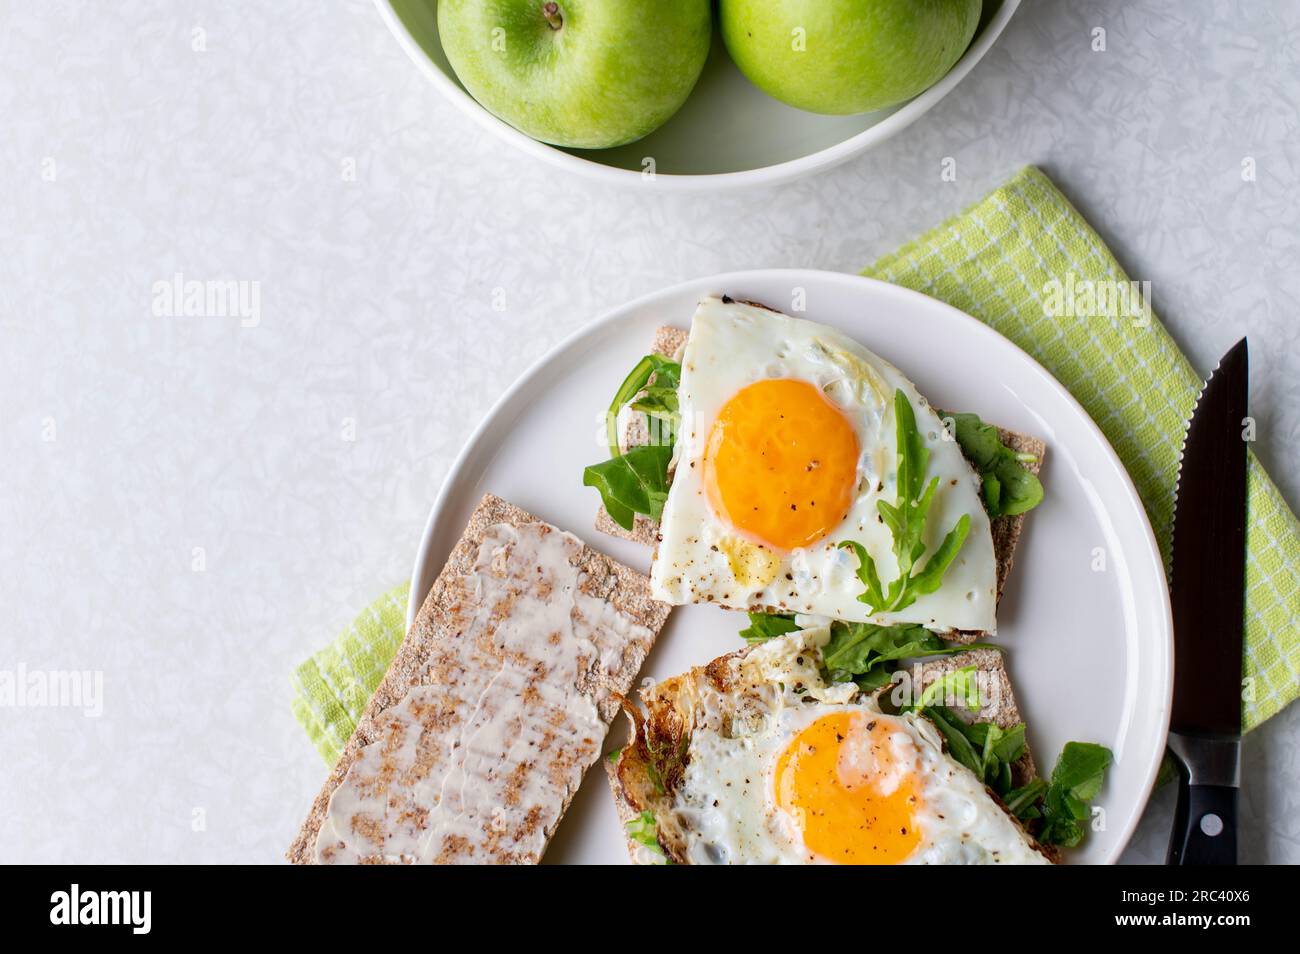 Colazione salutare con uova fritte, rucola, pane croccante e mela verde su sfondo chiaro Foto Stock